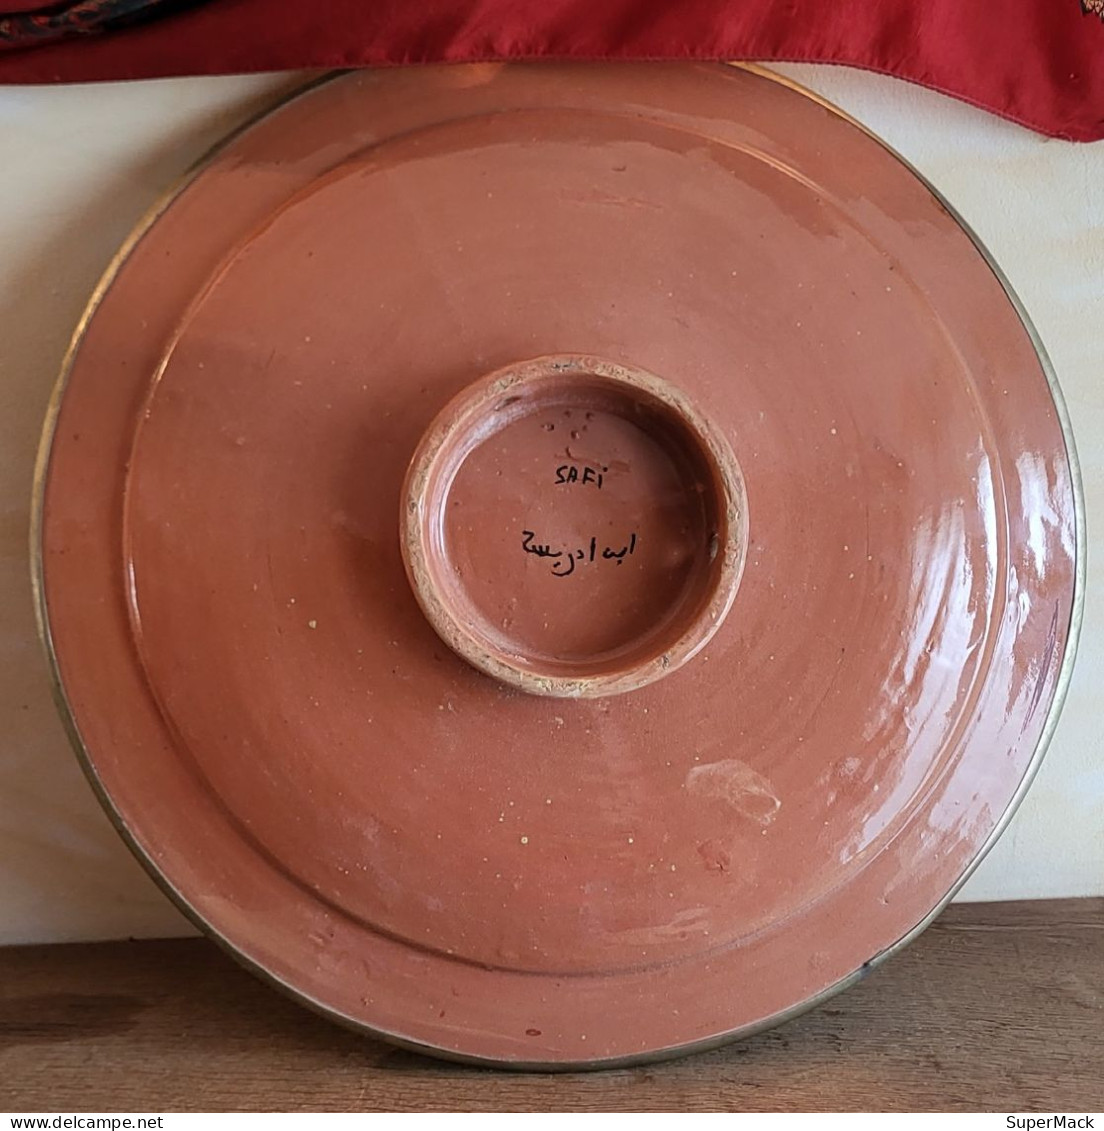 SAFI (Maroc) Plat à Couscous, céramique & cuivre, Diam. 42 cm, années 60